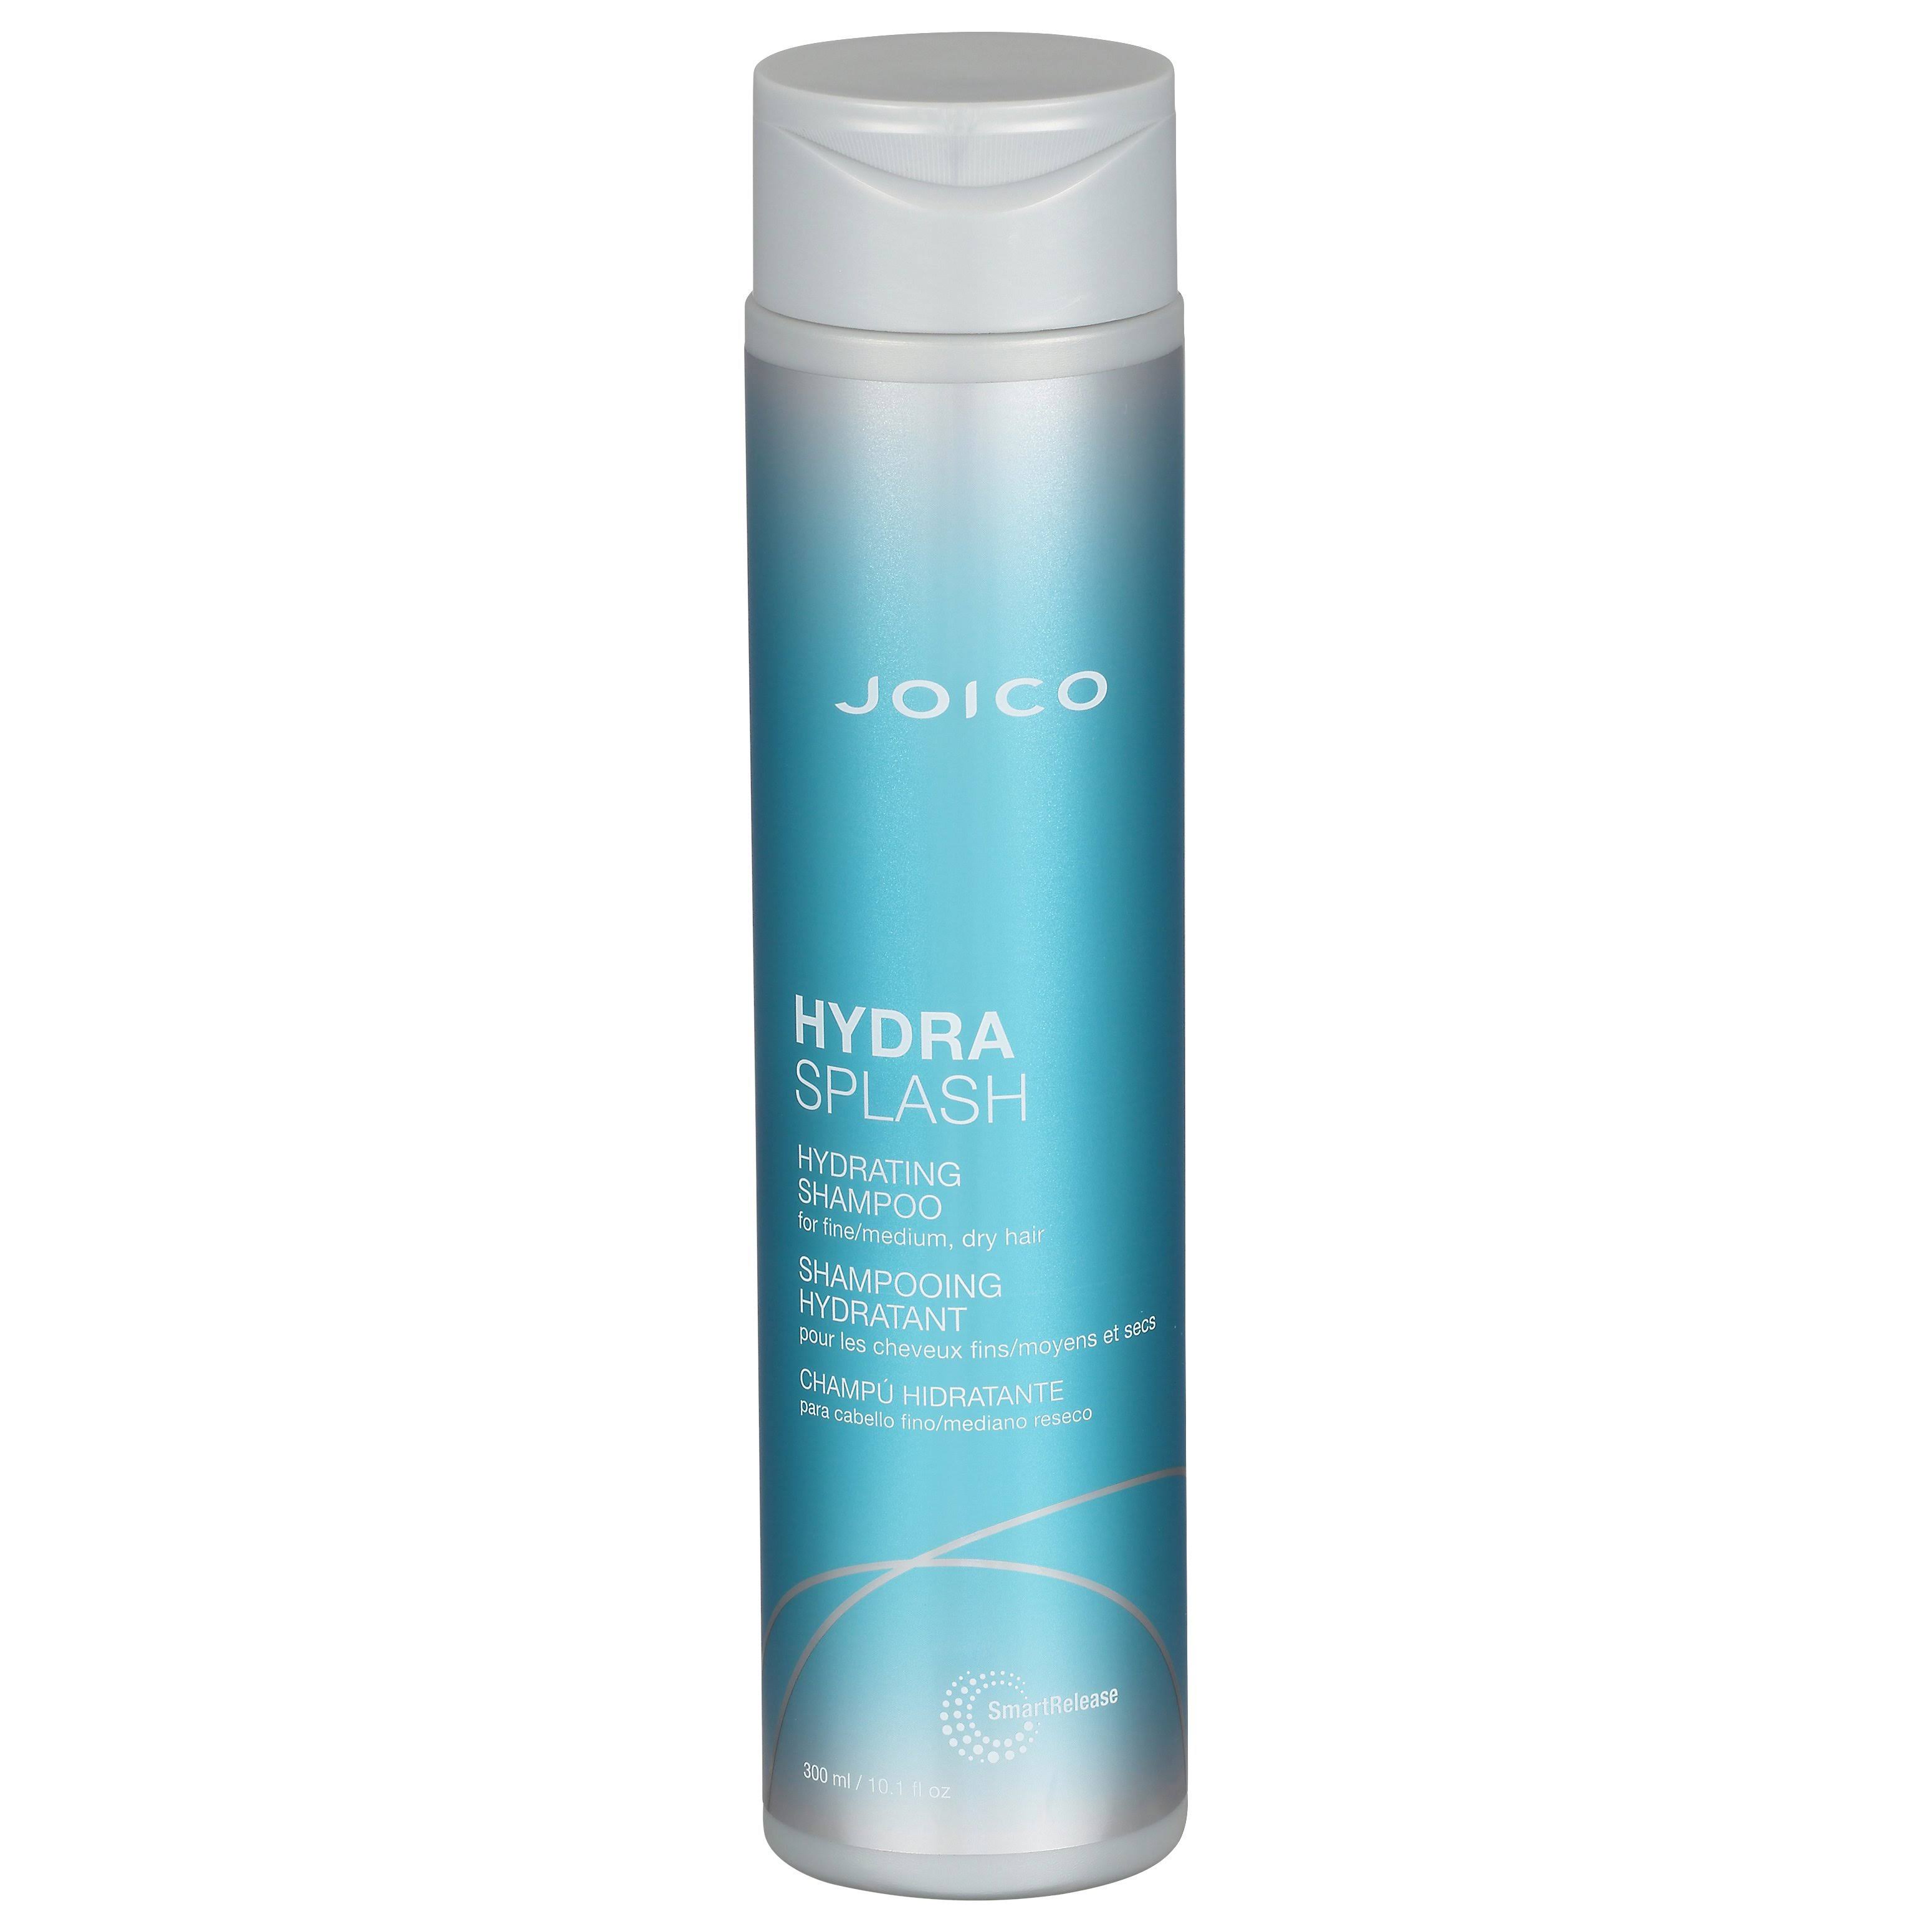 Joico HydraSplash Hydrating Shampoo For Fine Hair, 10.1-ounce